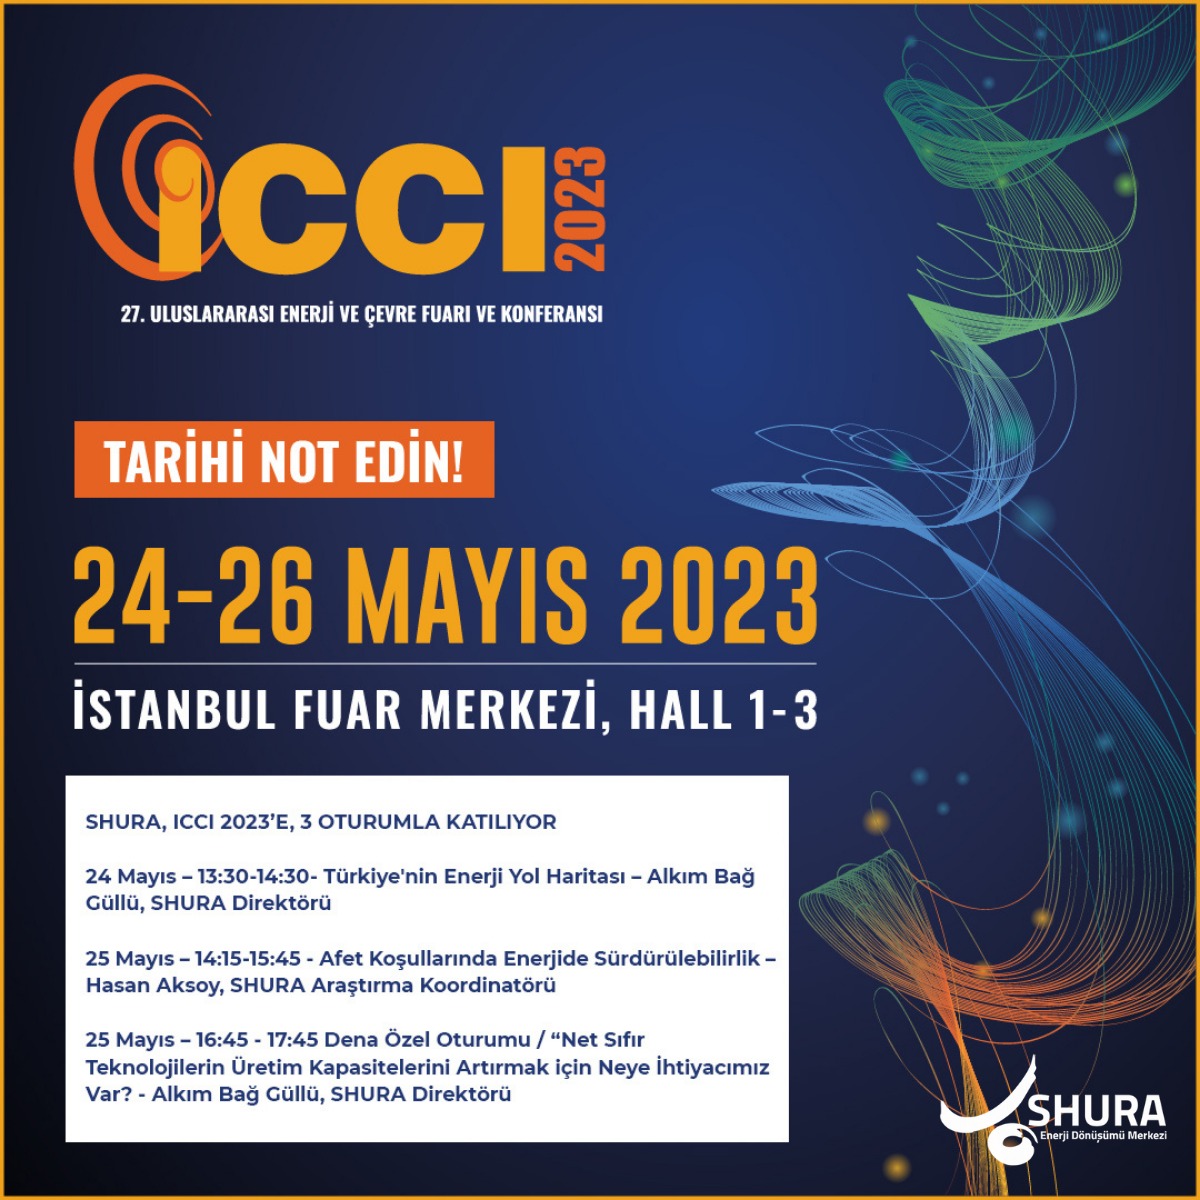 ICCI – Uluslararası Enerji ve Çevre Fuarı ve Konferansı’nın 27’ncisi 24-26 Mayıs 2023’te İstanbul Fuar Merkezi’nde gerçekleşecek.